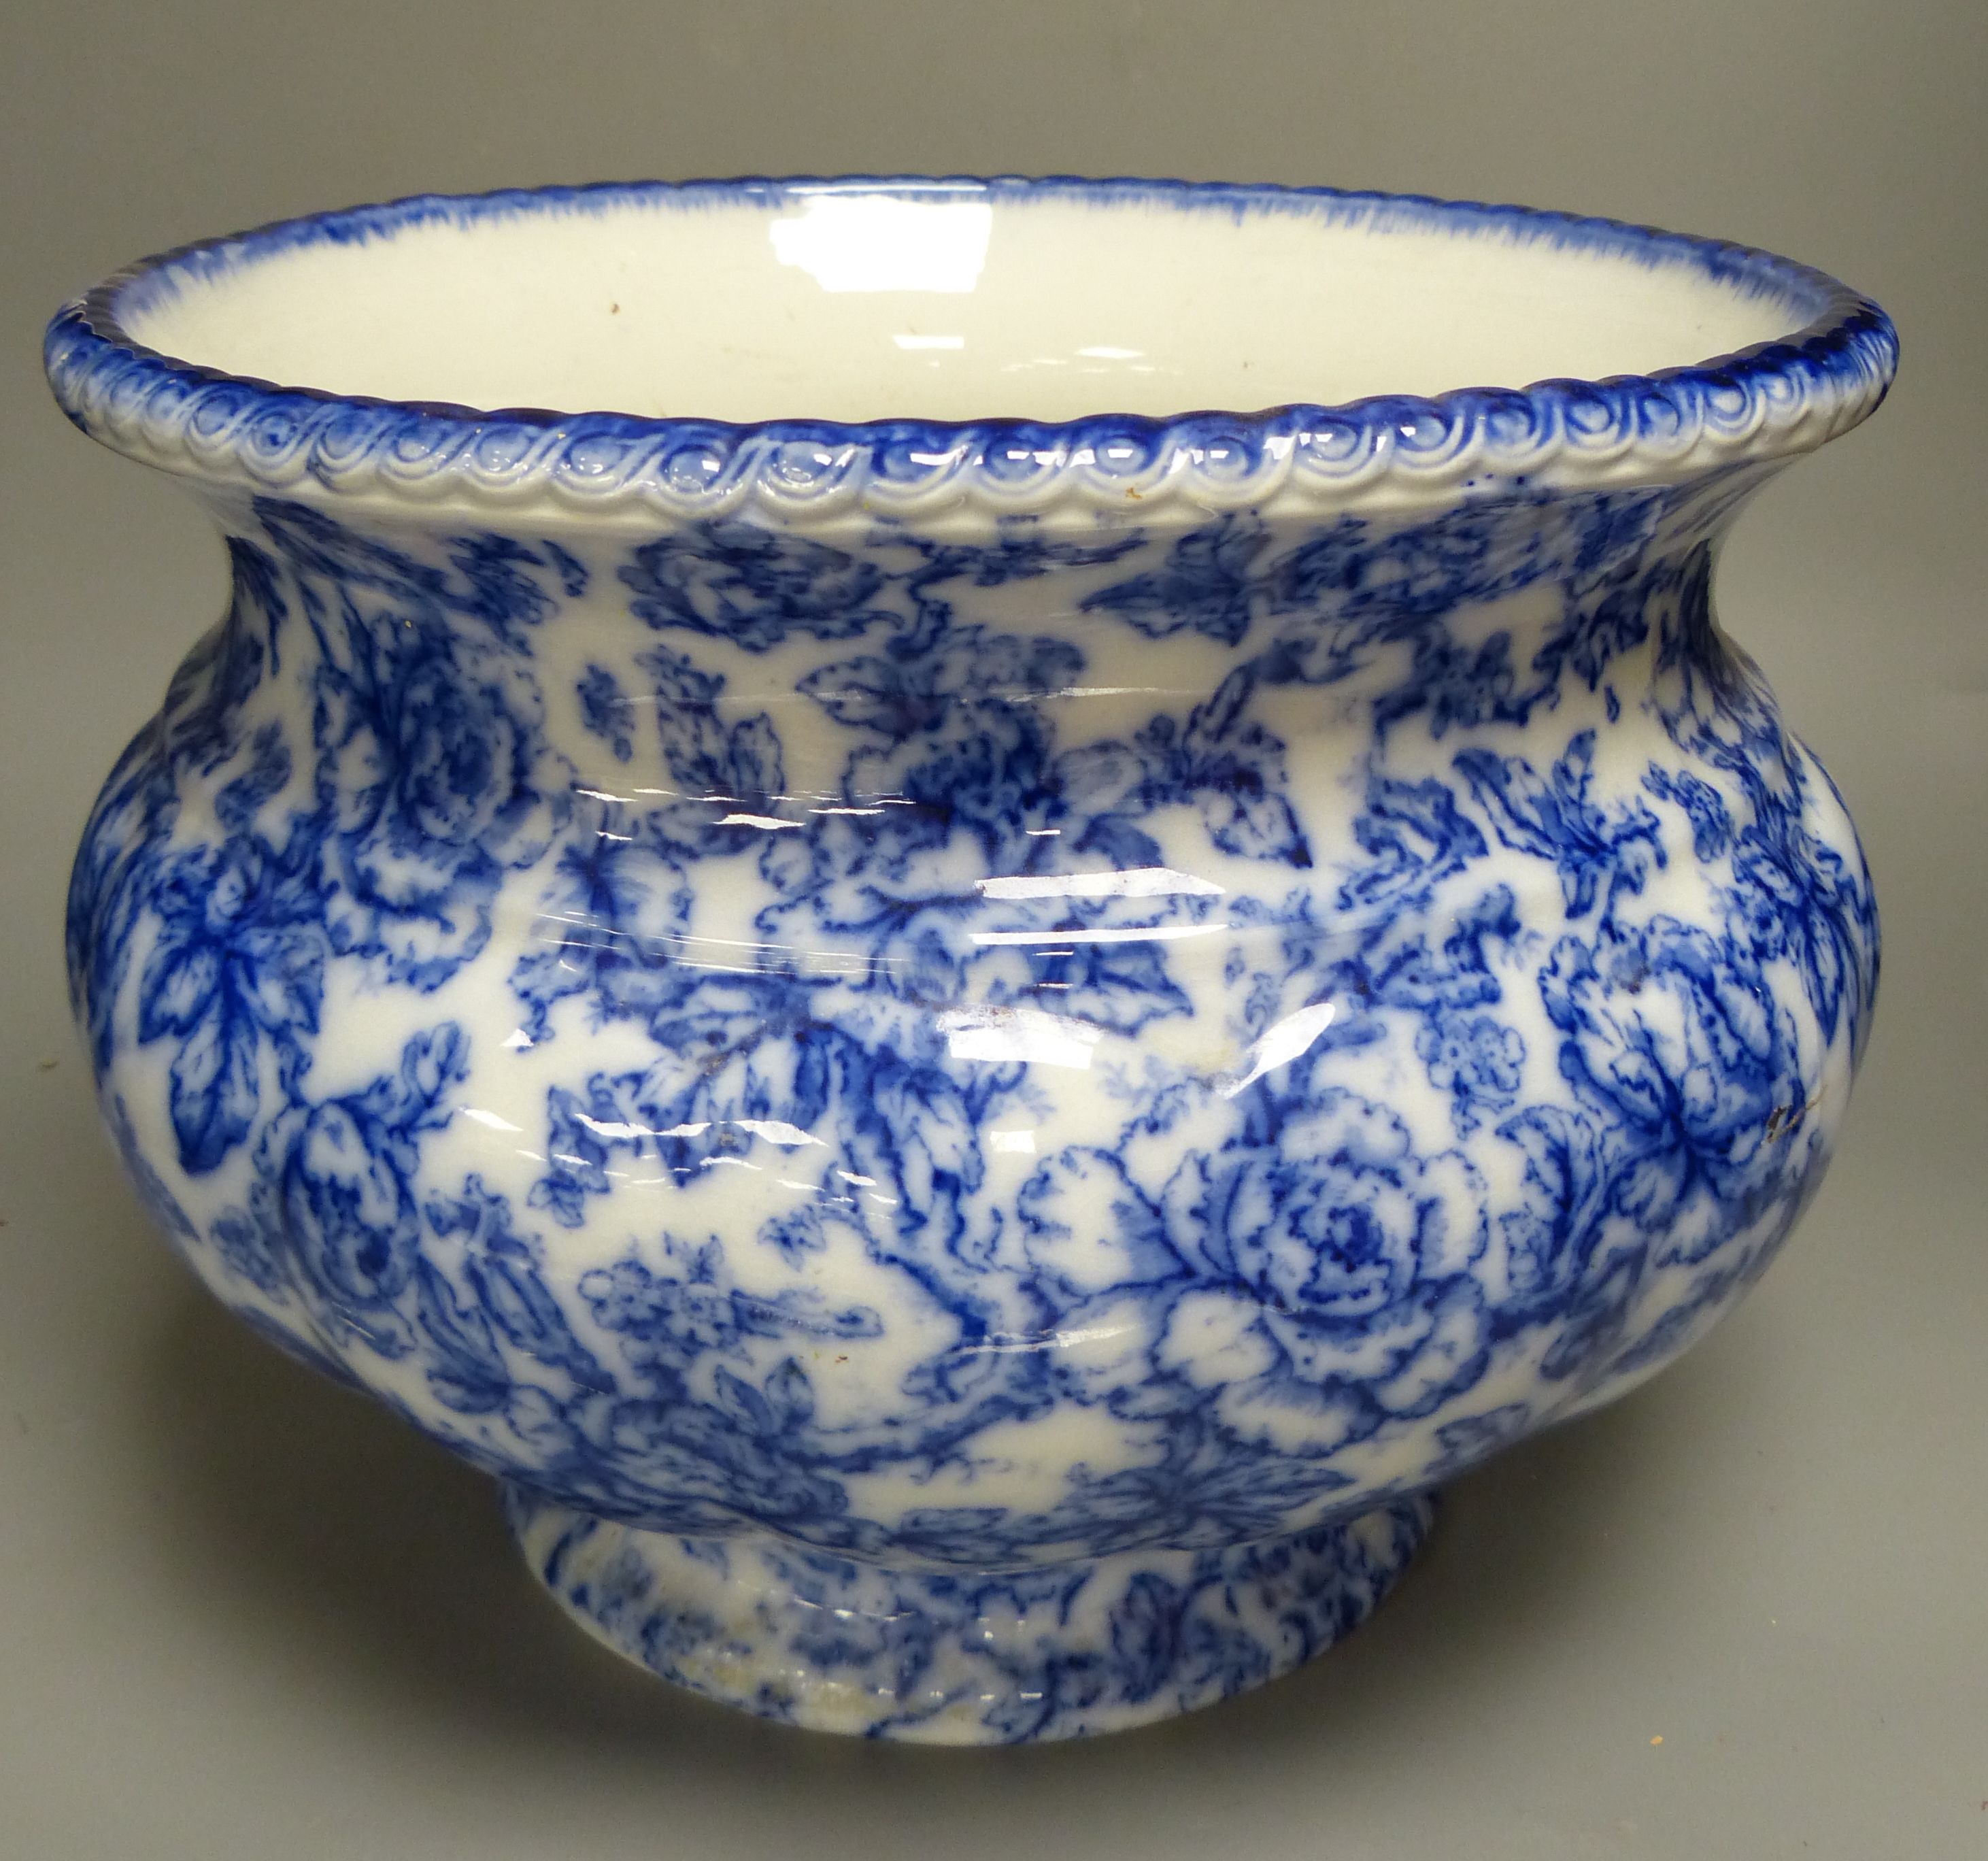 A Losol ware blue and white jardiniere, diameter 33cm